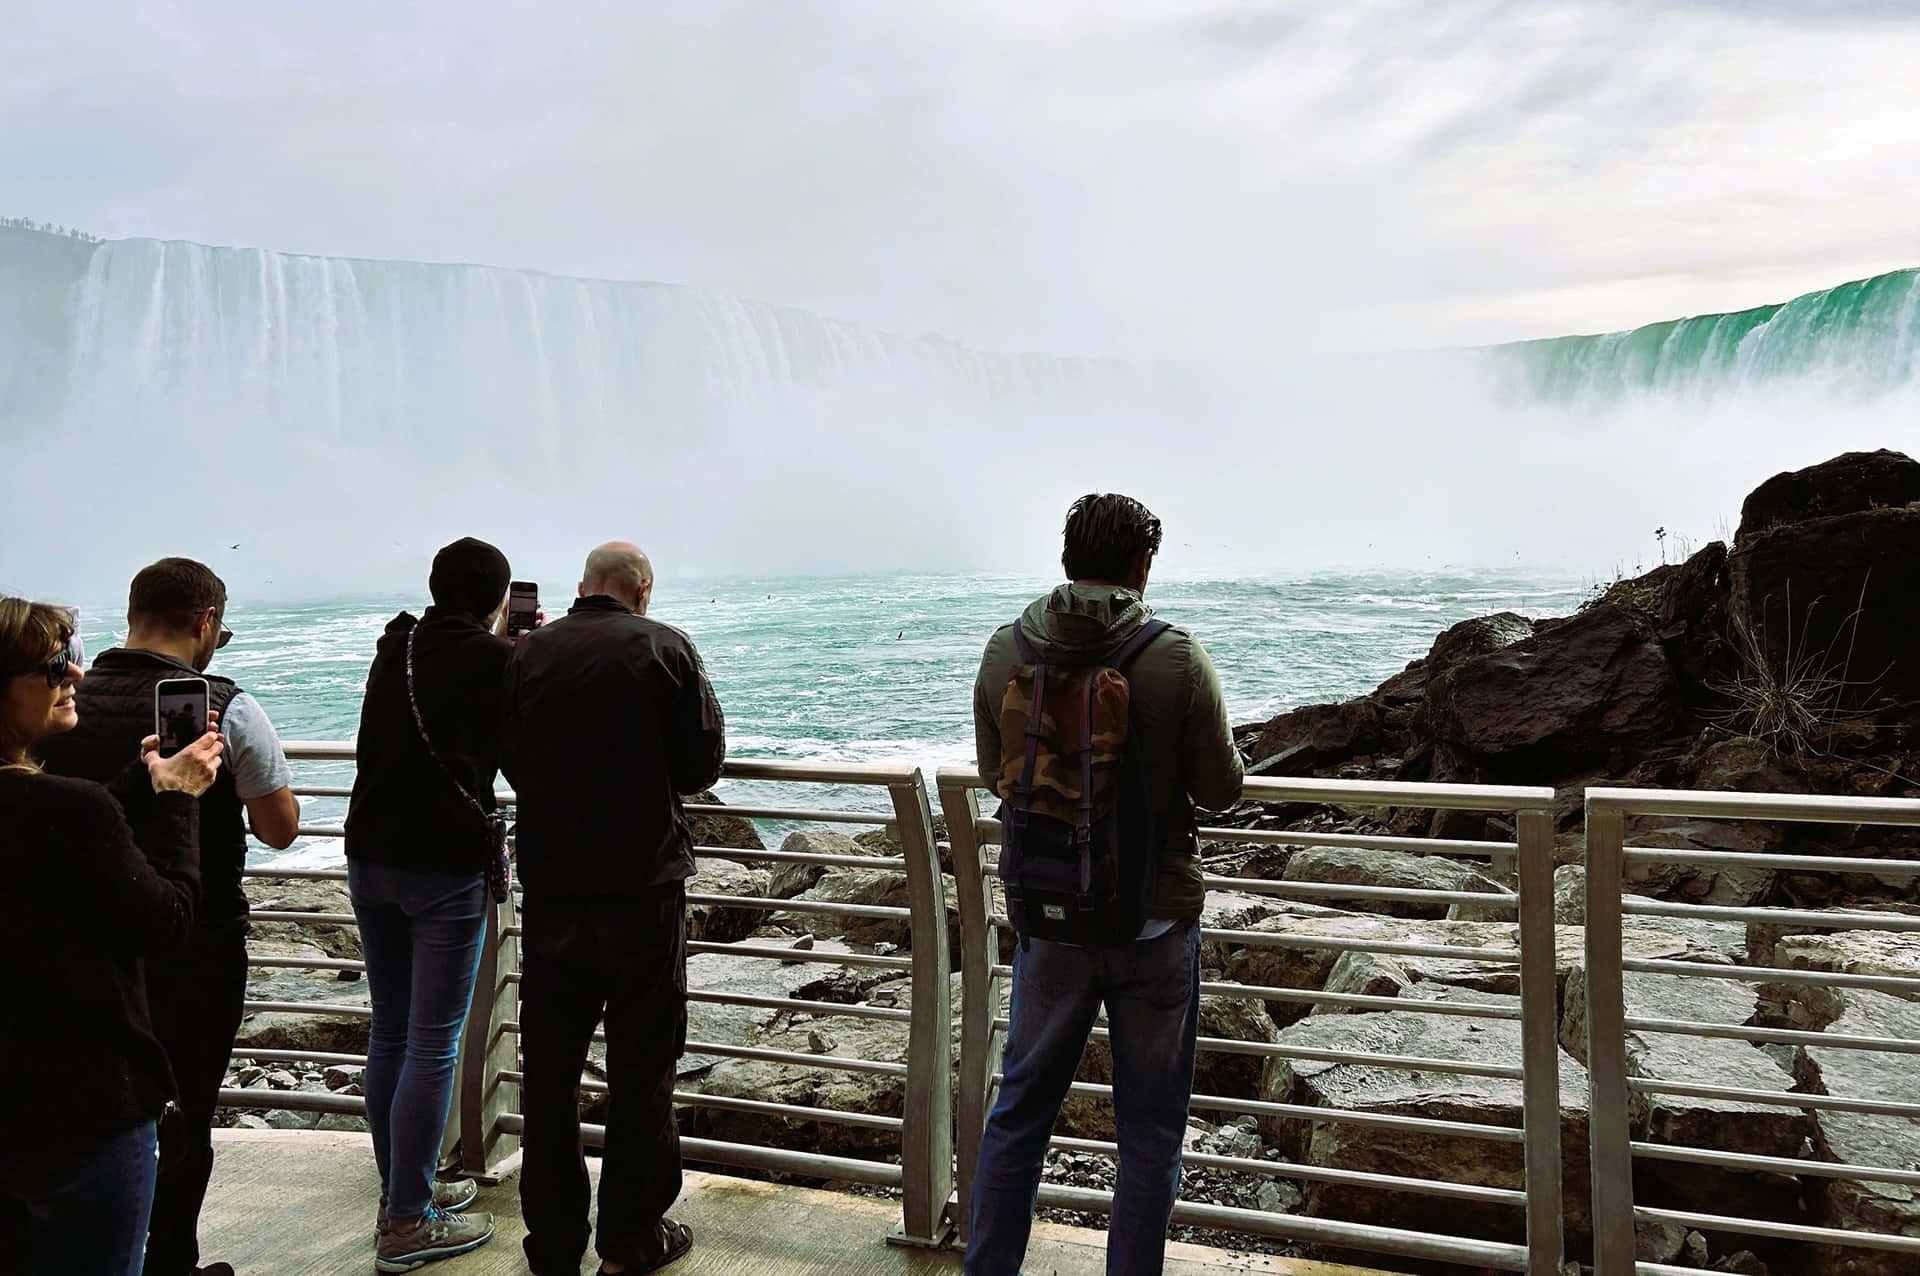 Take in the majestic beauty of Niagara Falls